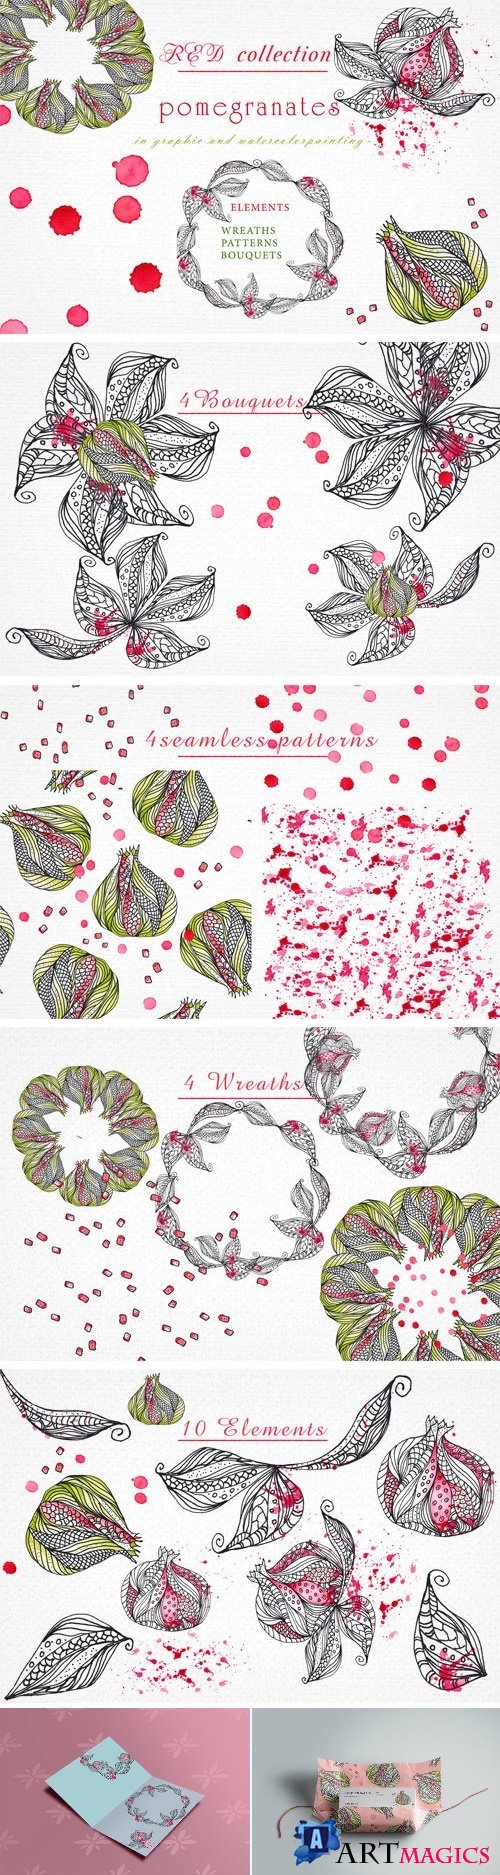 Pomegranates. Graphic & Watercolor - 2350131